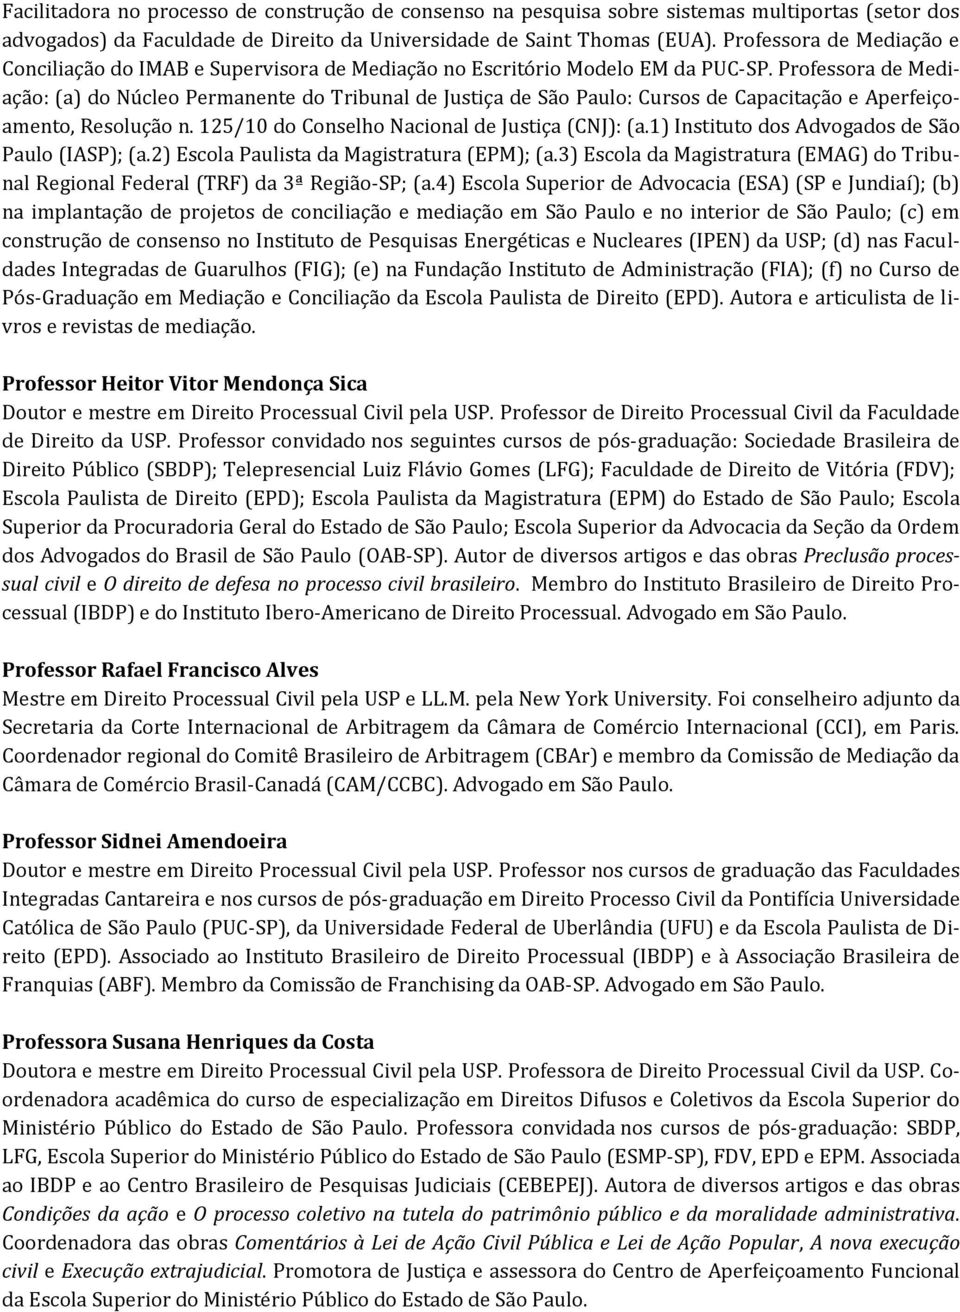 Professora de Mediação: (a) do Núcleo Permanente do Tribunal de Justiça de São Paulo: Cursos de Capacitação e Aperfeiçoamento, Resolução n. 125/10 do Conselho Nacional de Justiça (CNJ): (a.